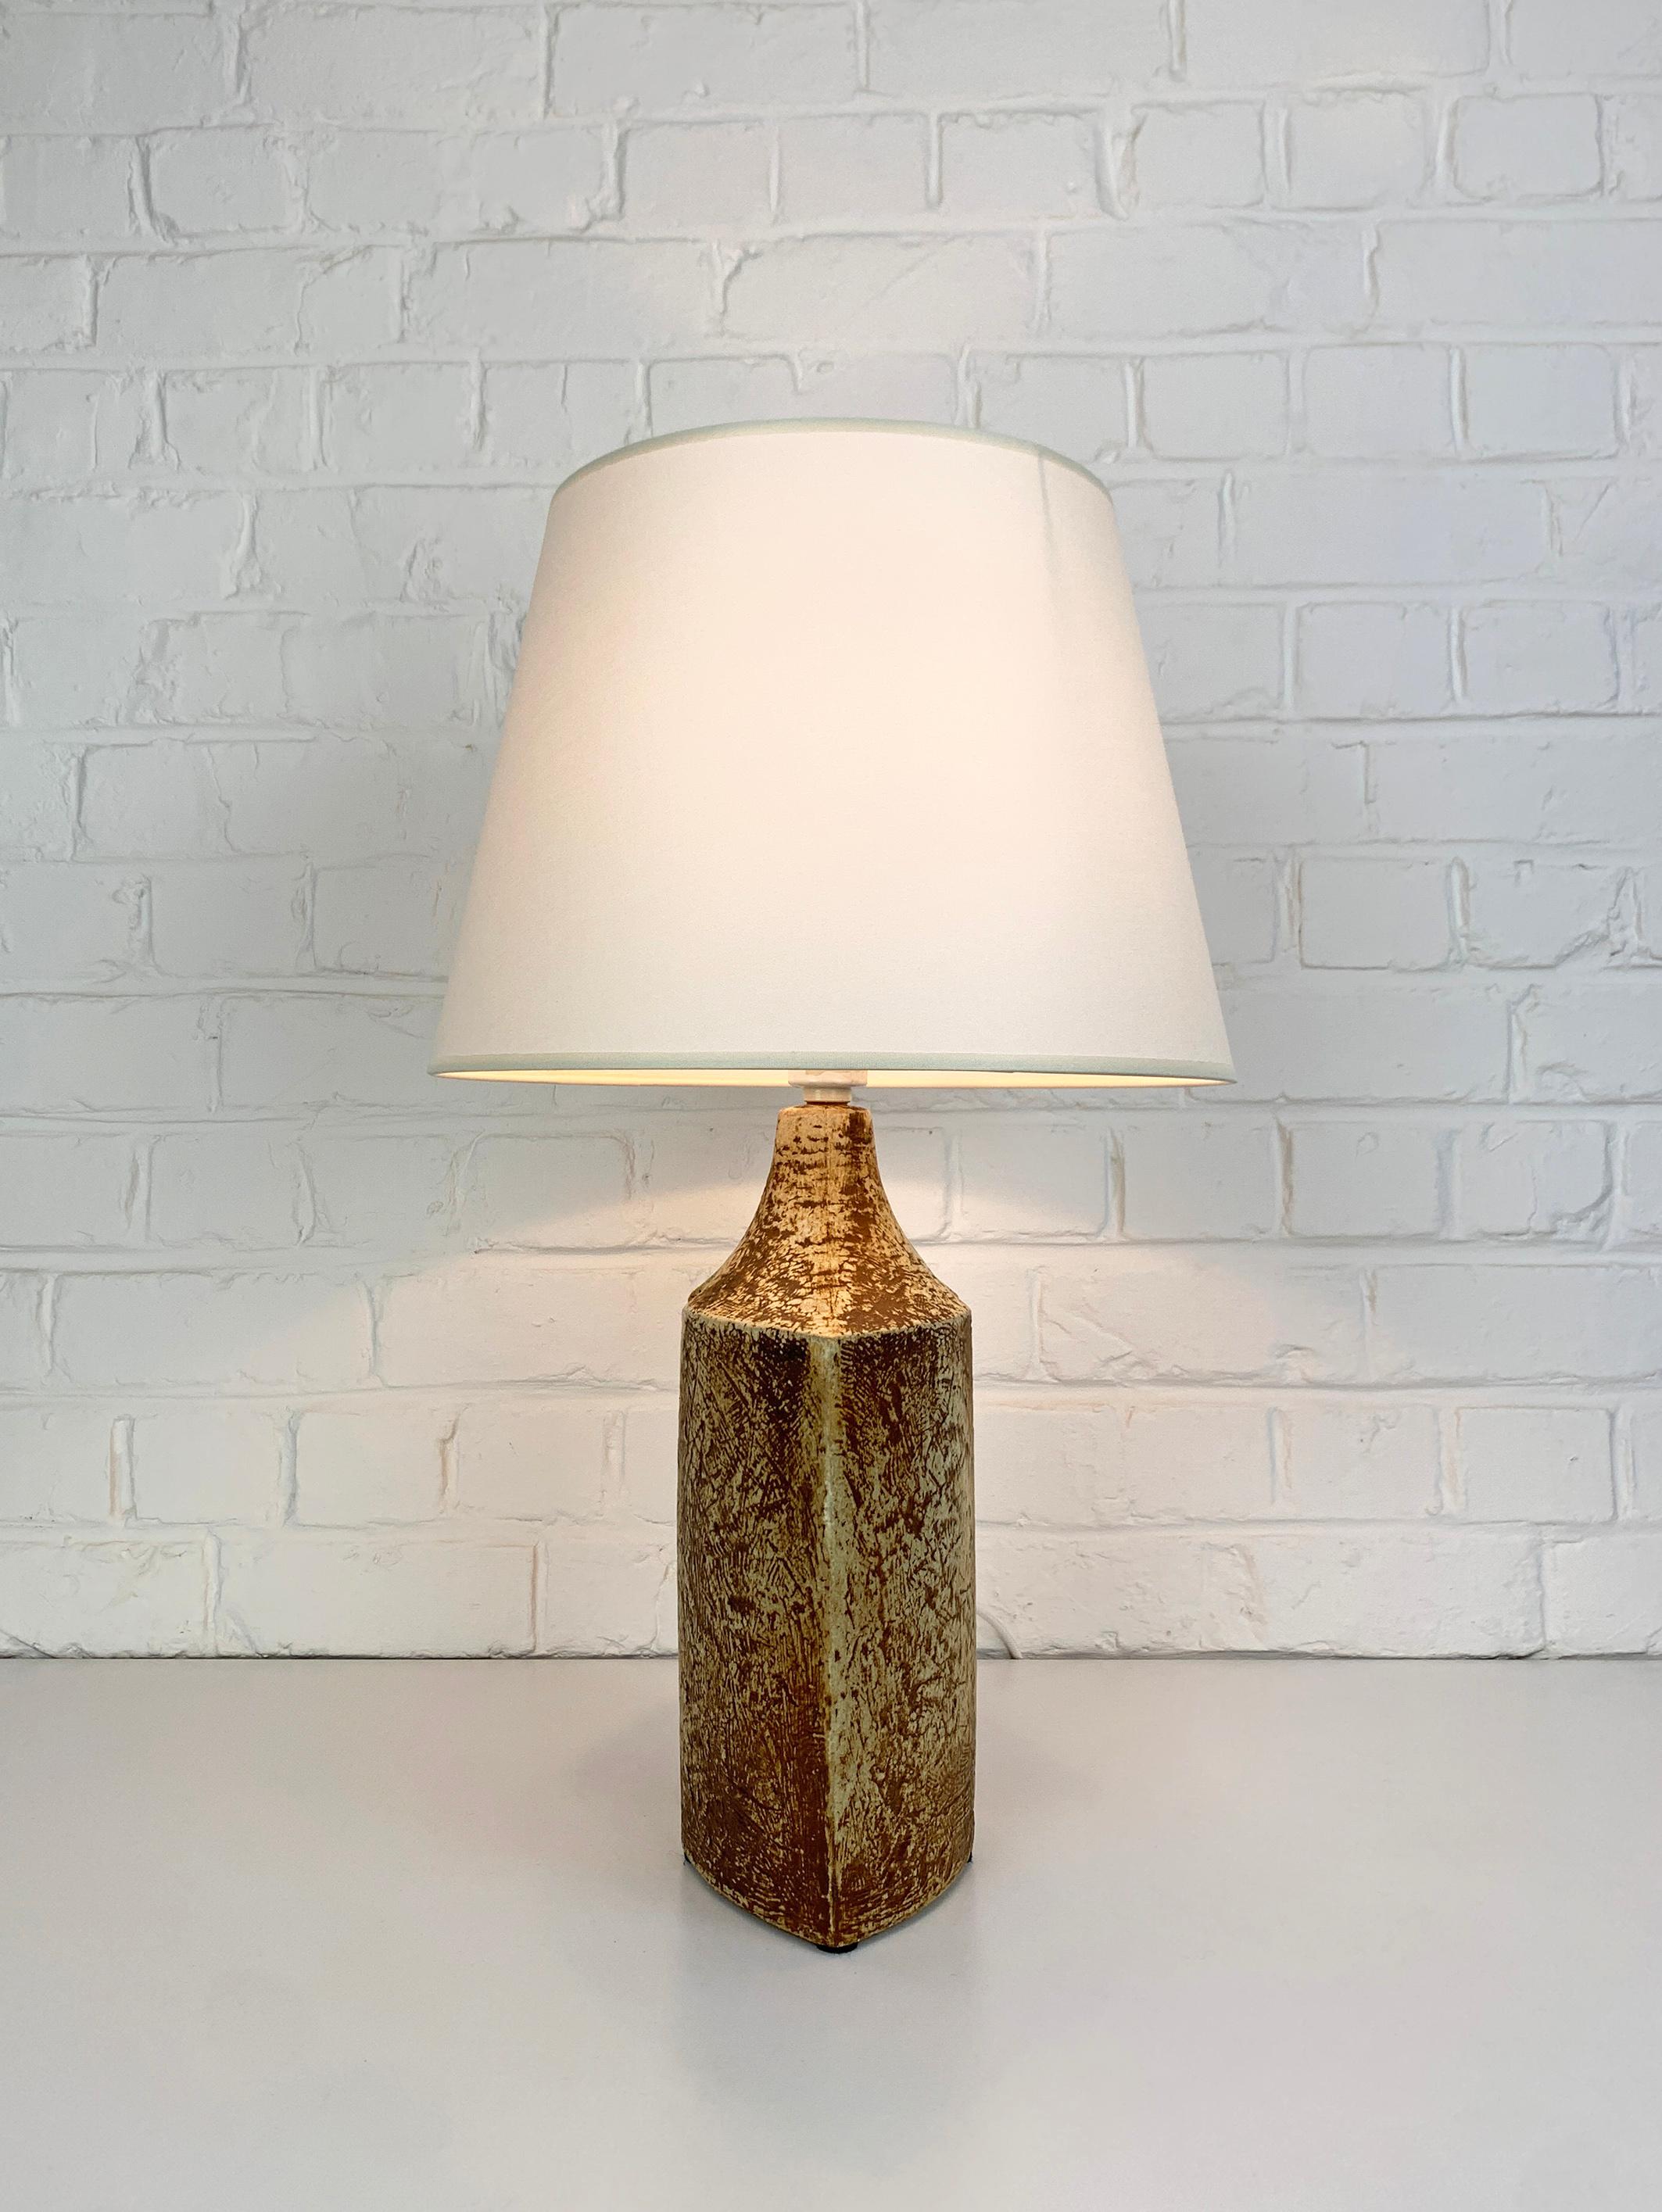 Glazed Big Danish Søholm Stentøj ceramic table lamp, glazed stoneware by Haico Nitzsche For Sale